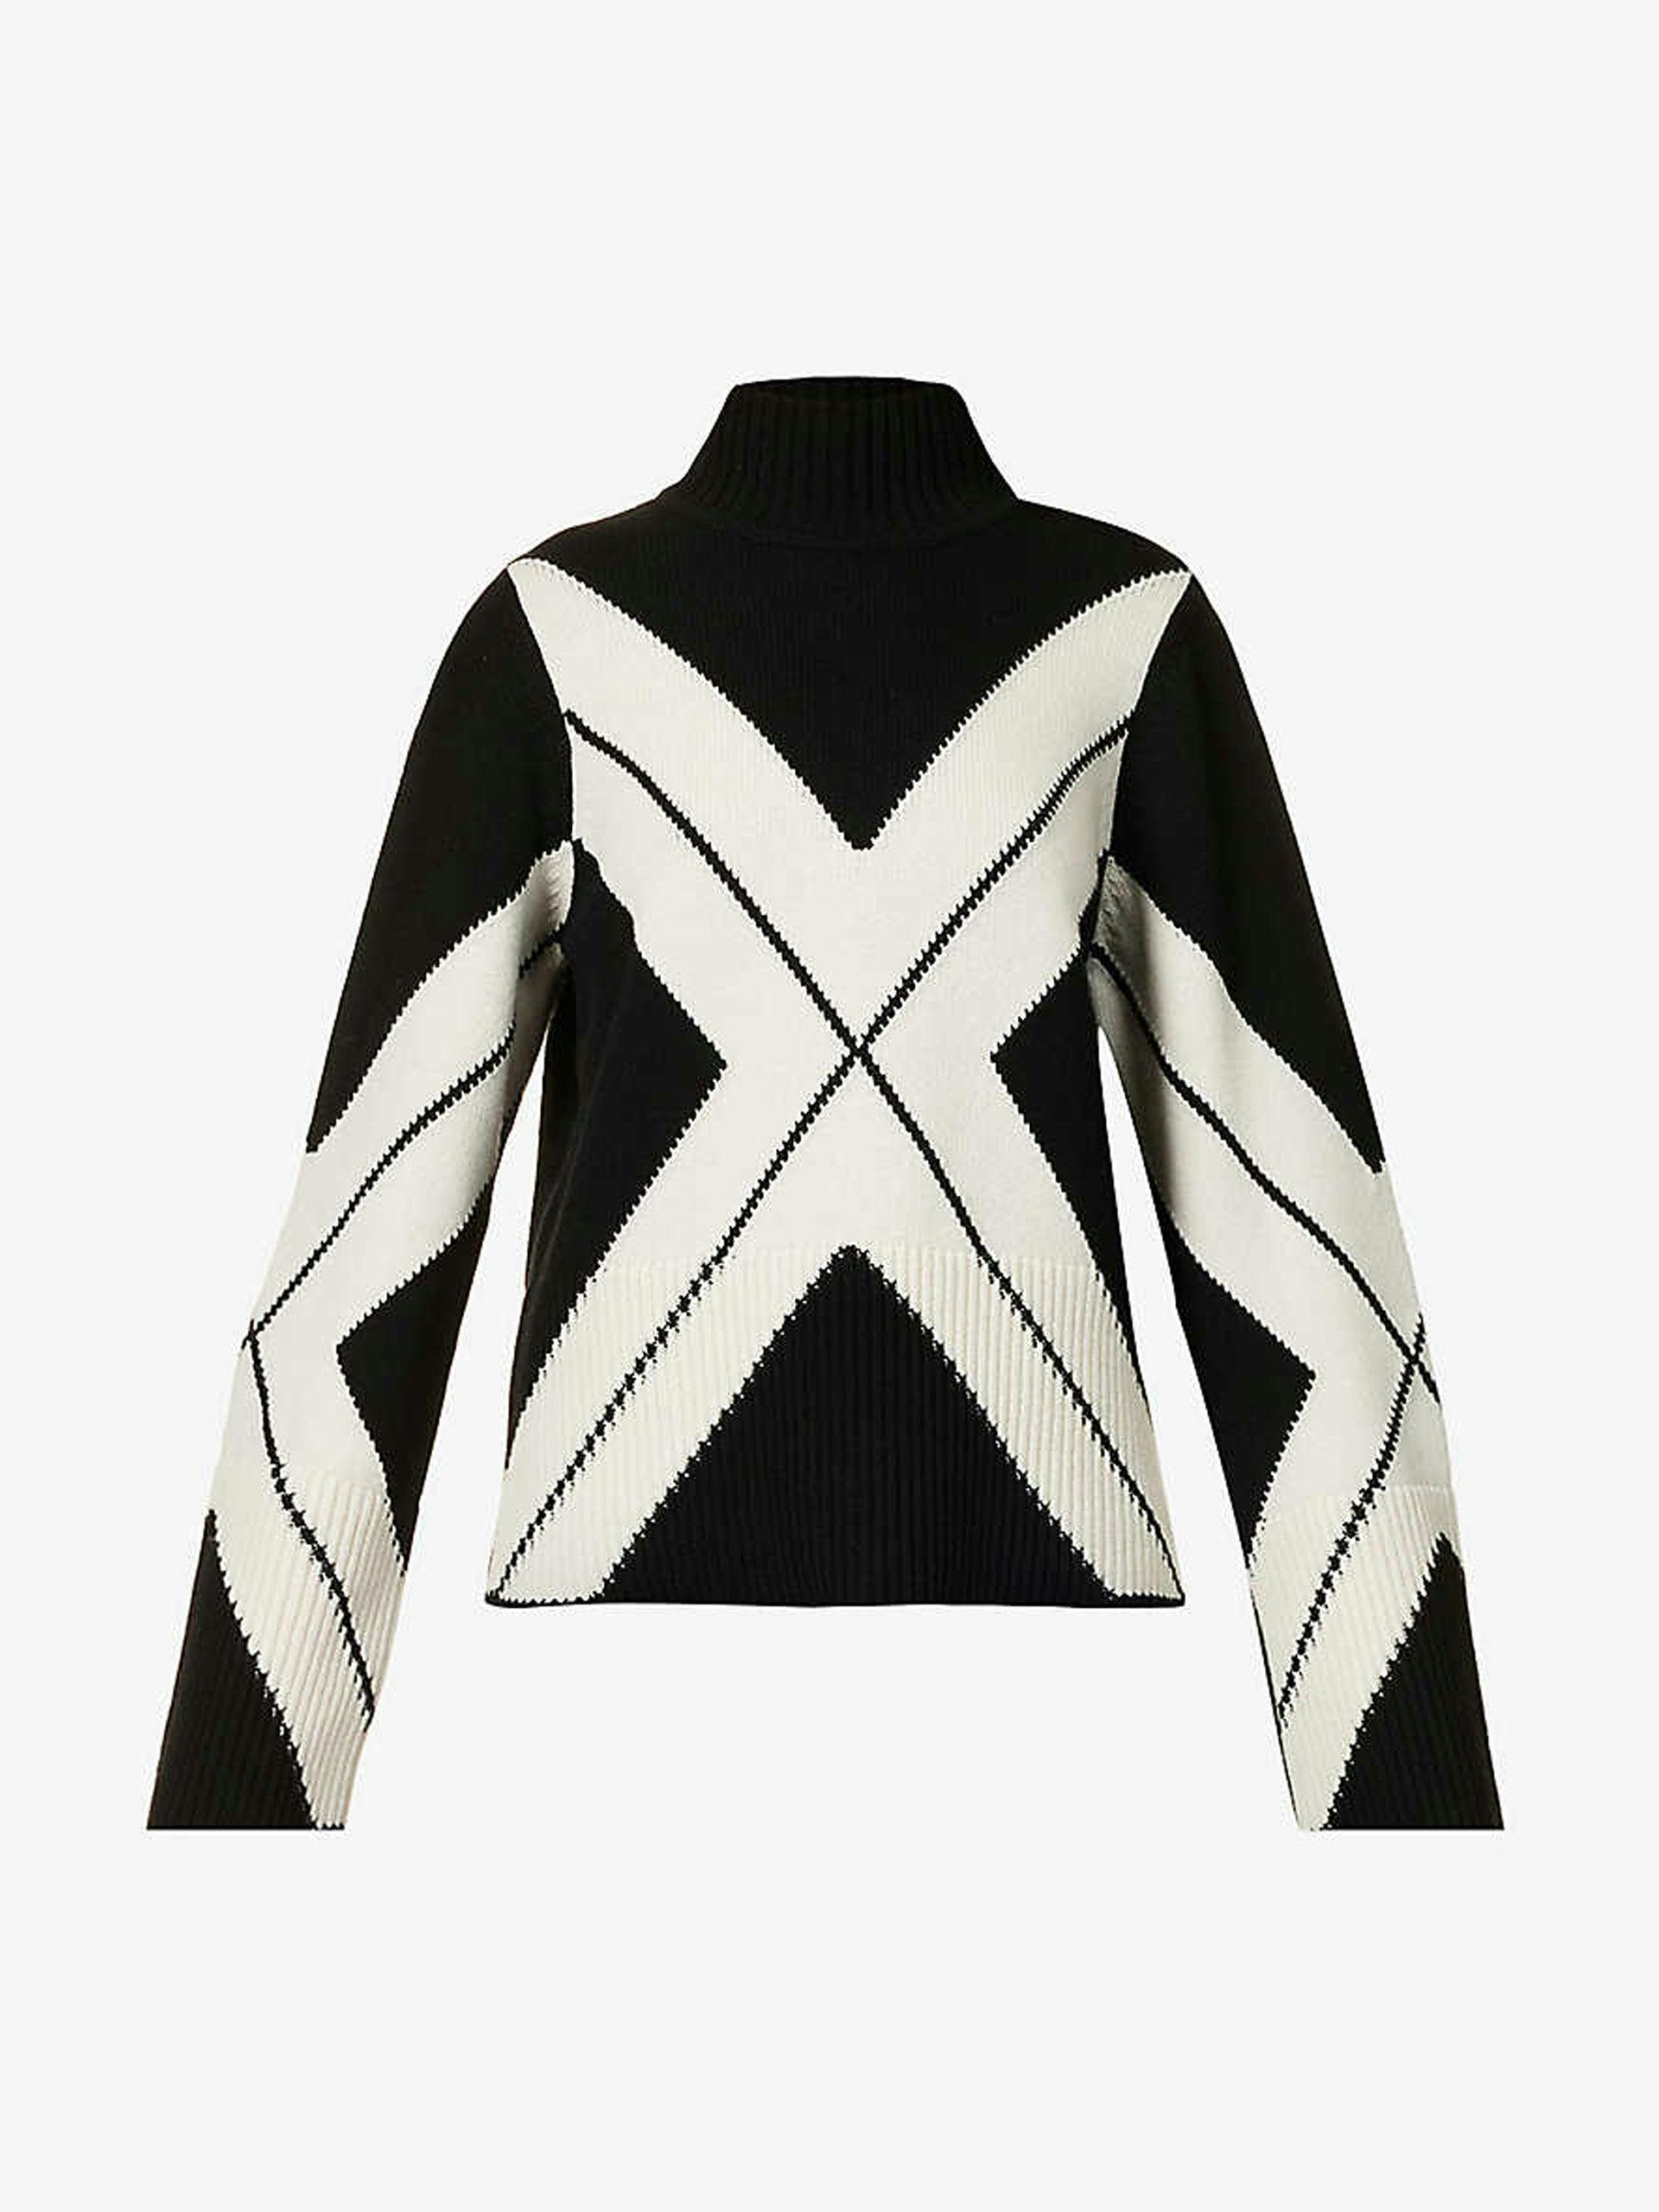 Black and white geometric printed jumper